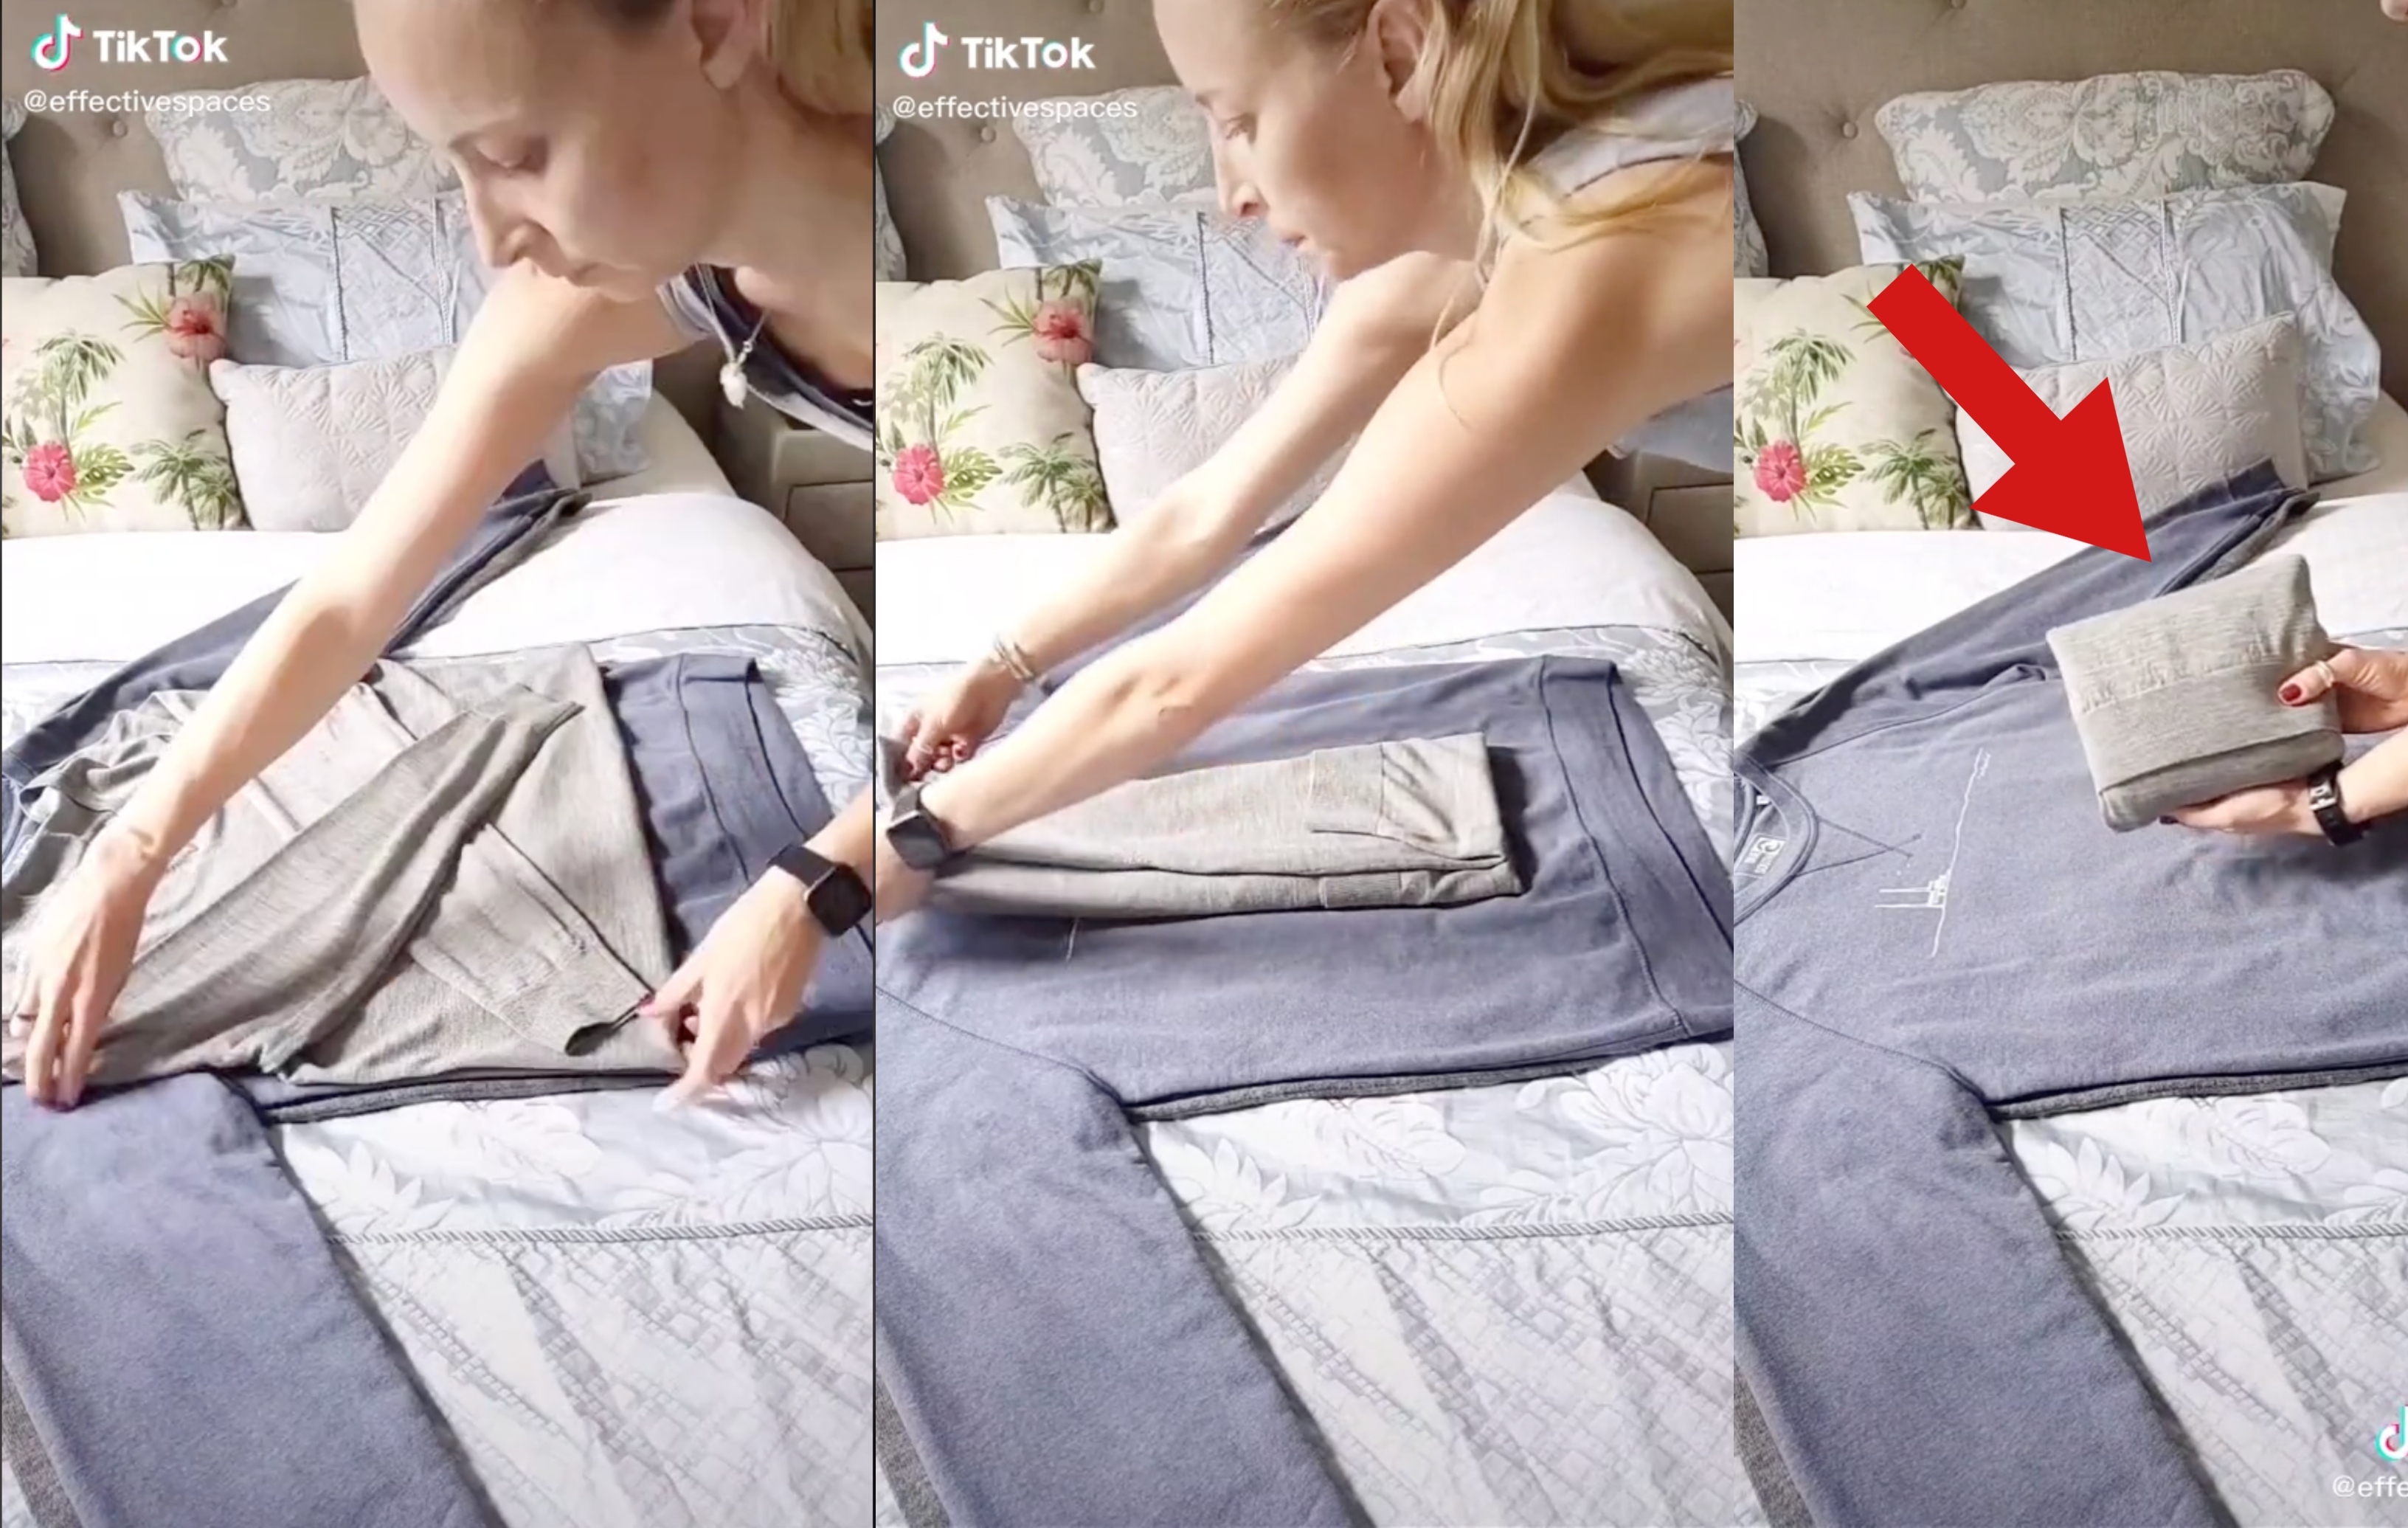 Cómo doblar la ropa para no tener que planchar, según esta tiktoker